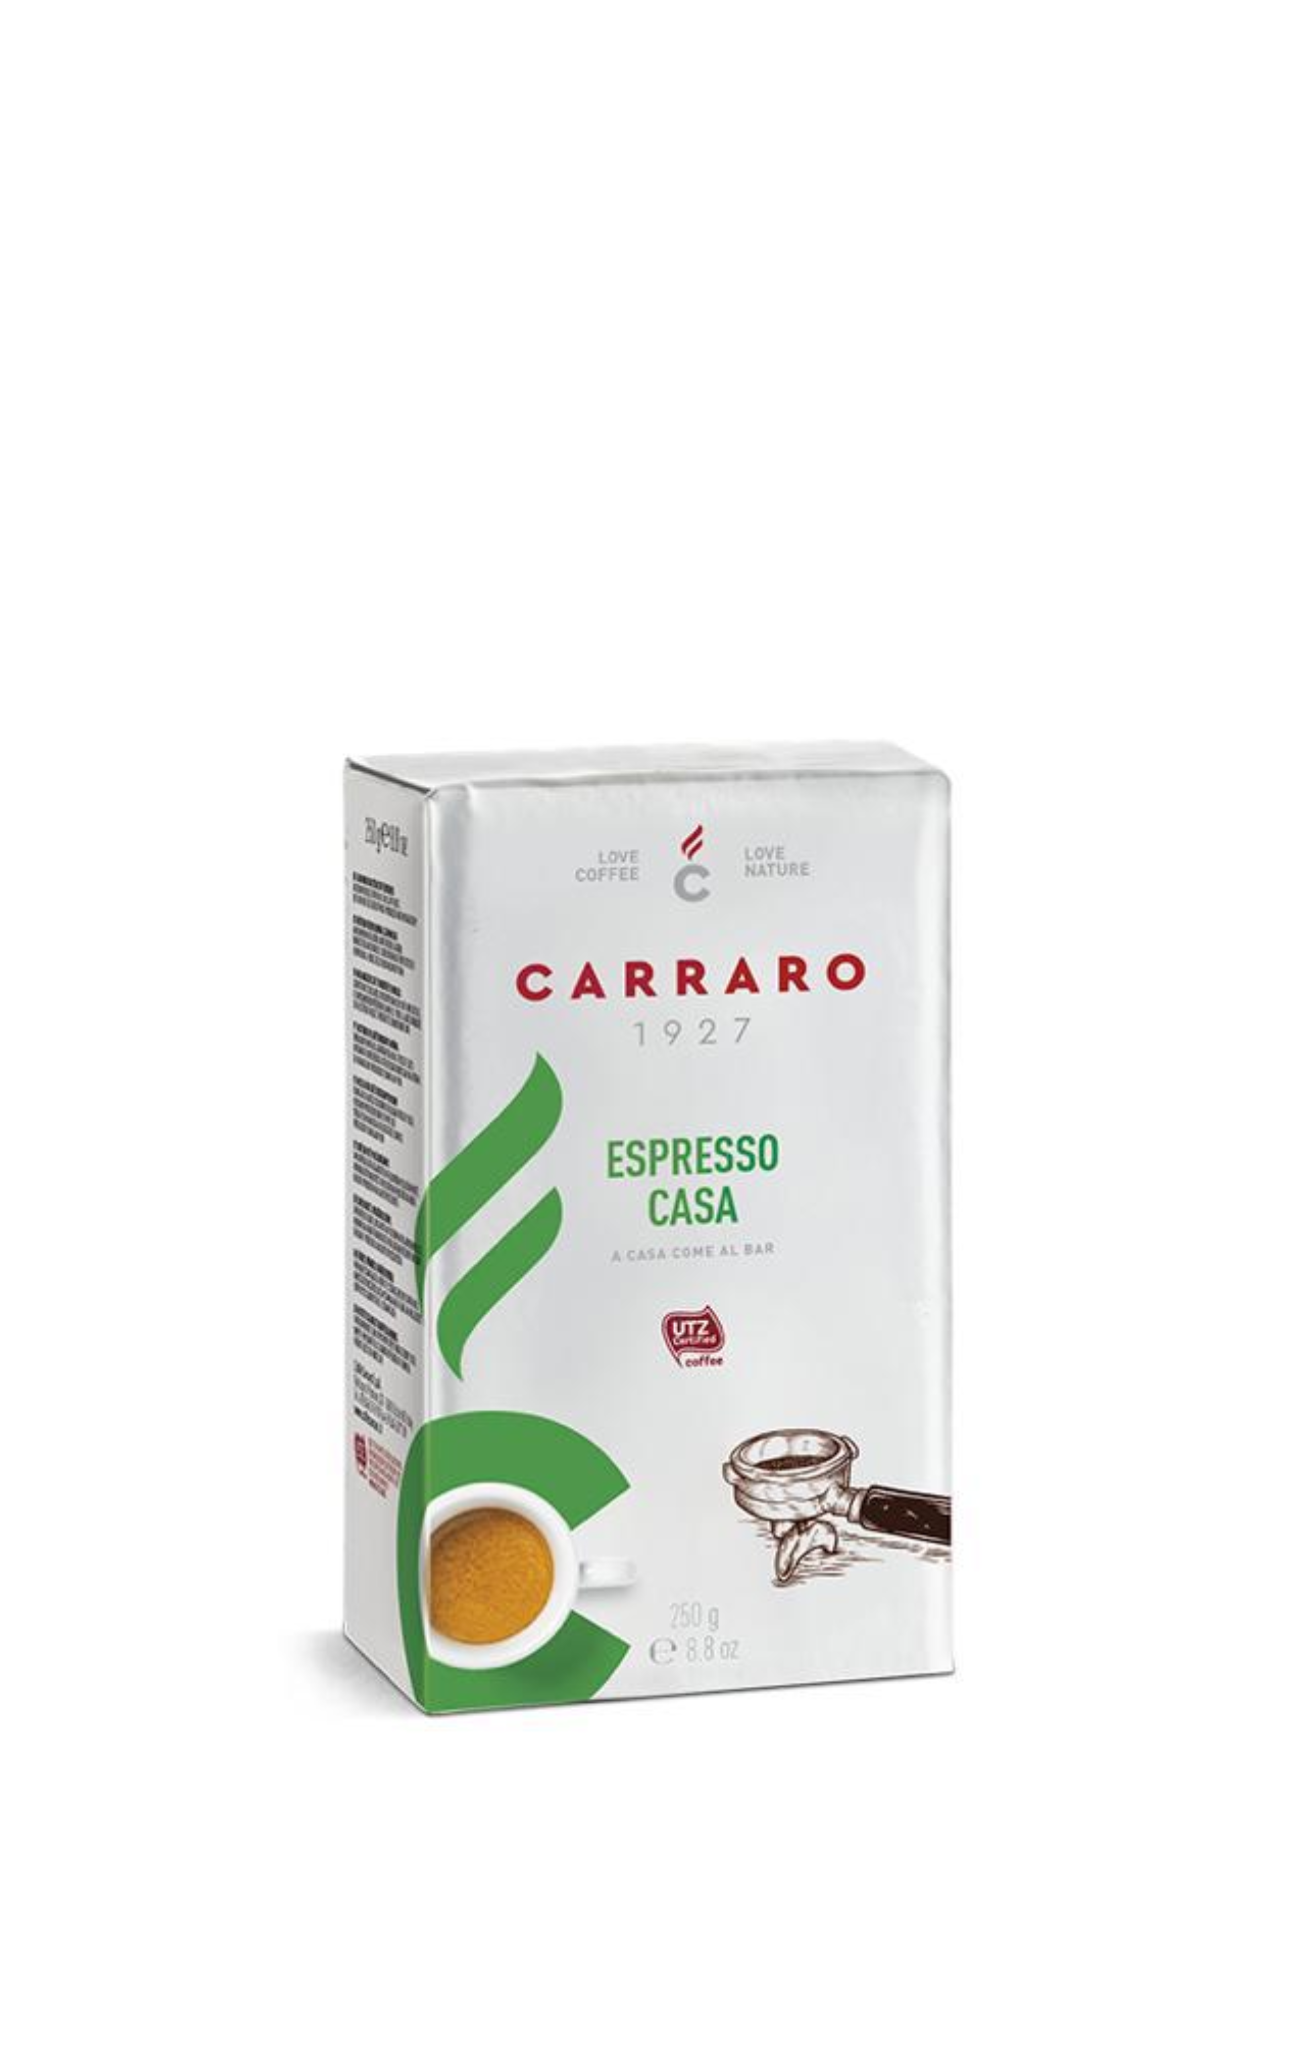 Carraro Espresso Casa - BAG